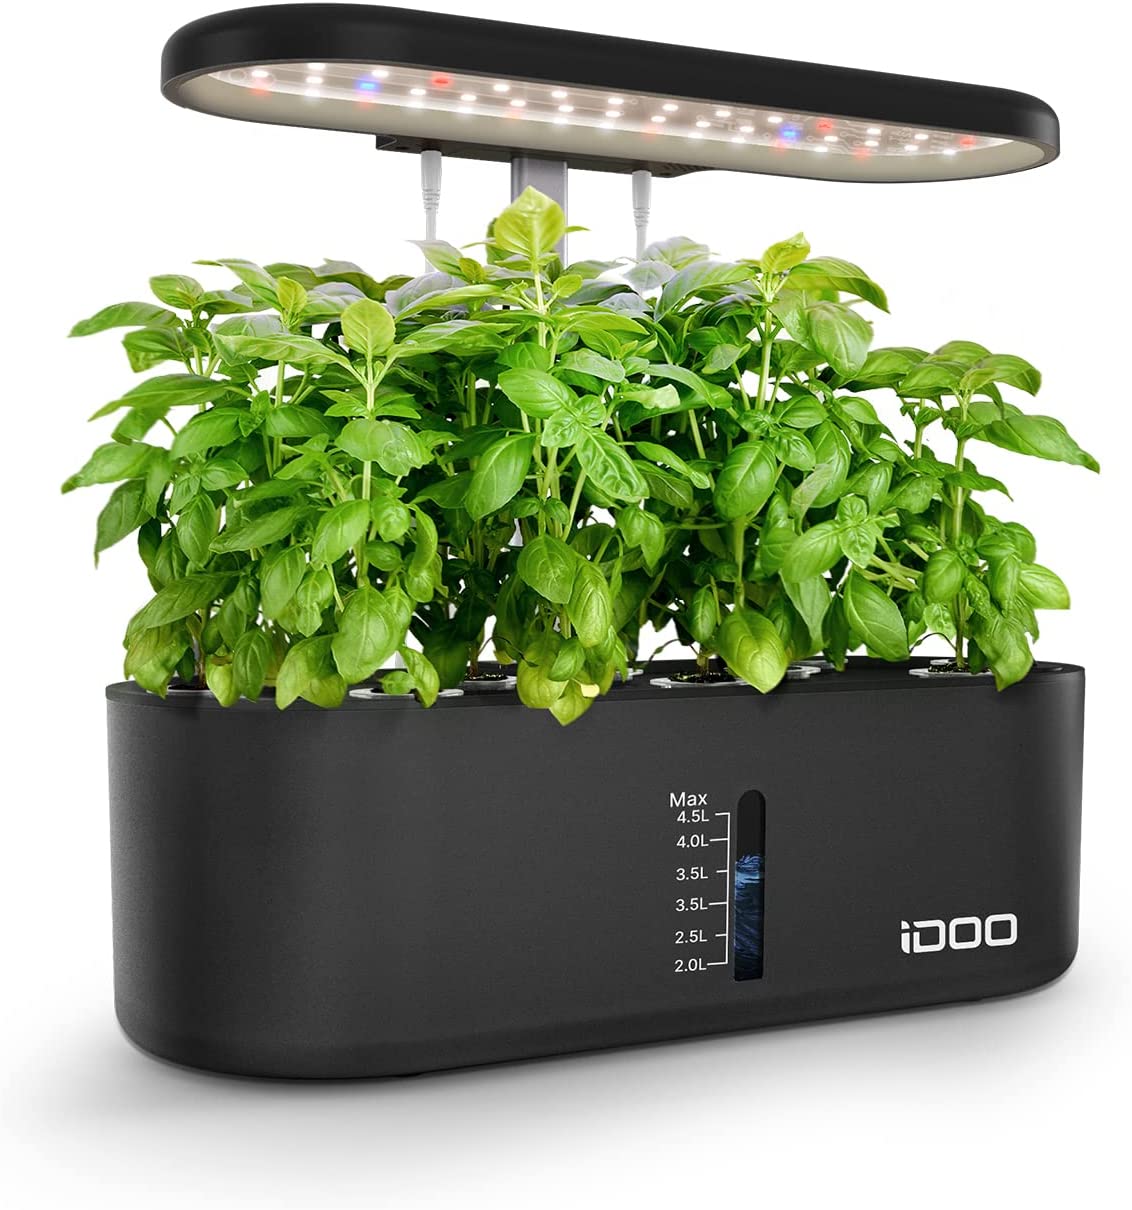 iDOO Potager d'intérieur avec minuterie automatique, jardin intelligent à 10 dosettes, lumière de croissance à LED, alarme de faible niveau d'eau, hauteur réglable, kit de germination ID-IG303